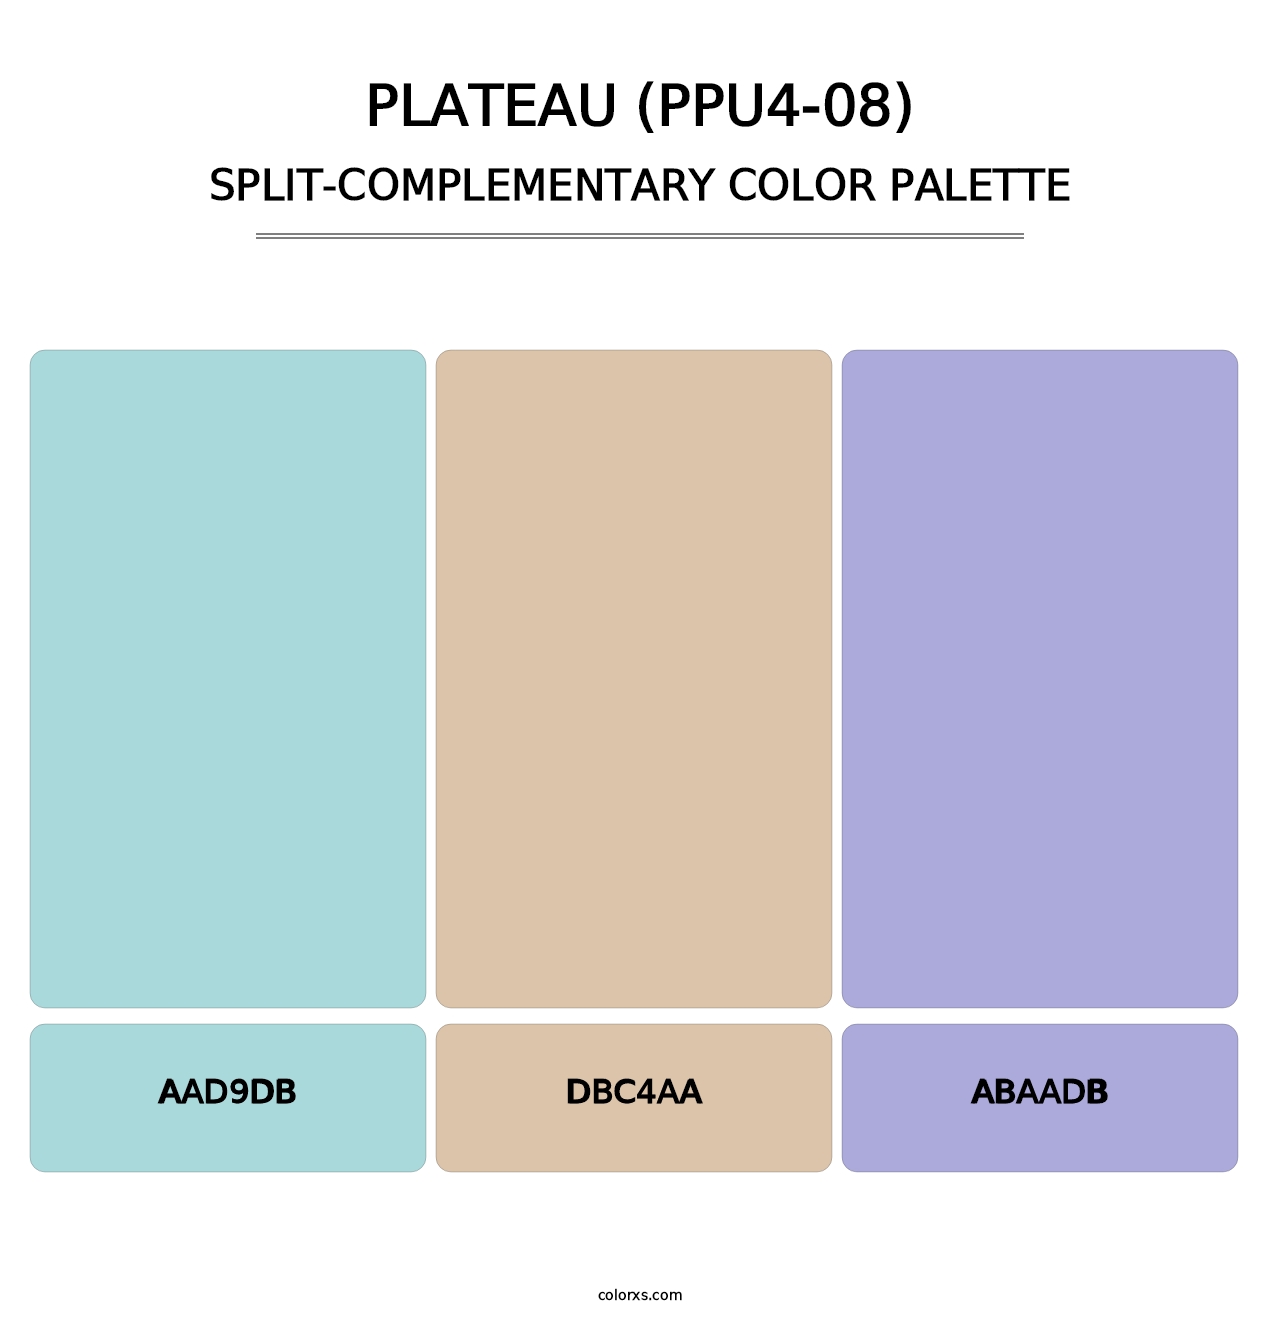 Plateau (PPU4-08) - Split-Complementary Color Palette